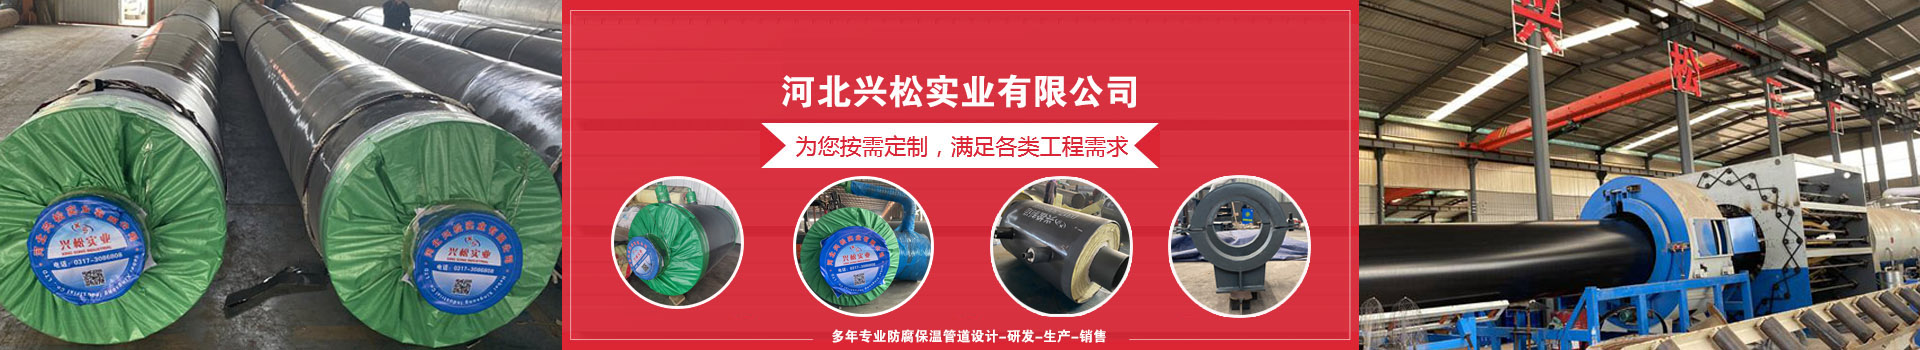 邢台南和县城西供热管网建设安装工程